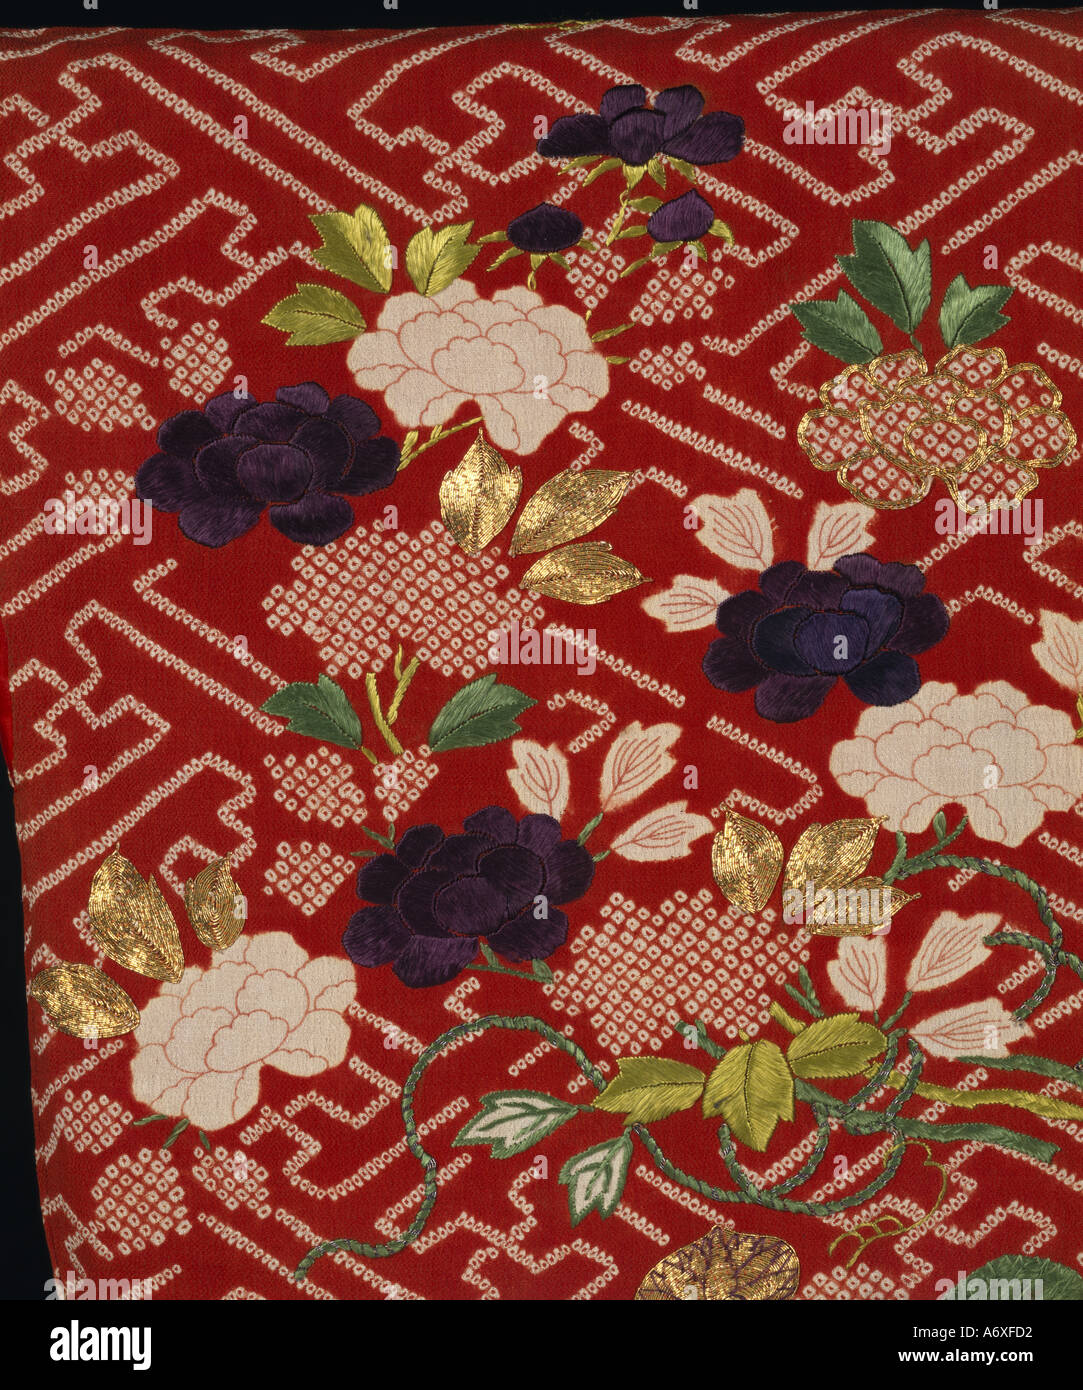 Detalles florales en kimonos. Japón, a principios del siglo XIX. Foto de stock